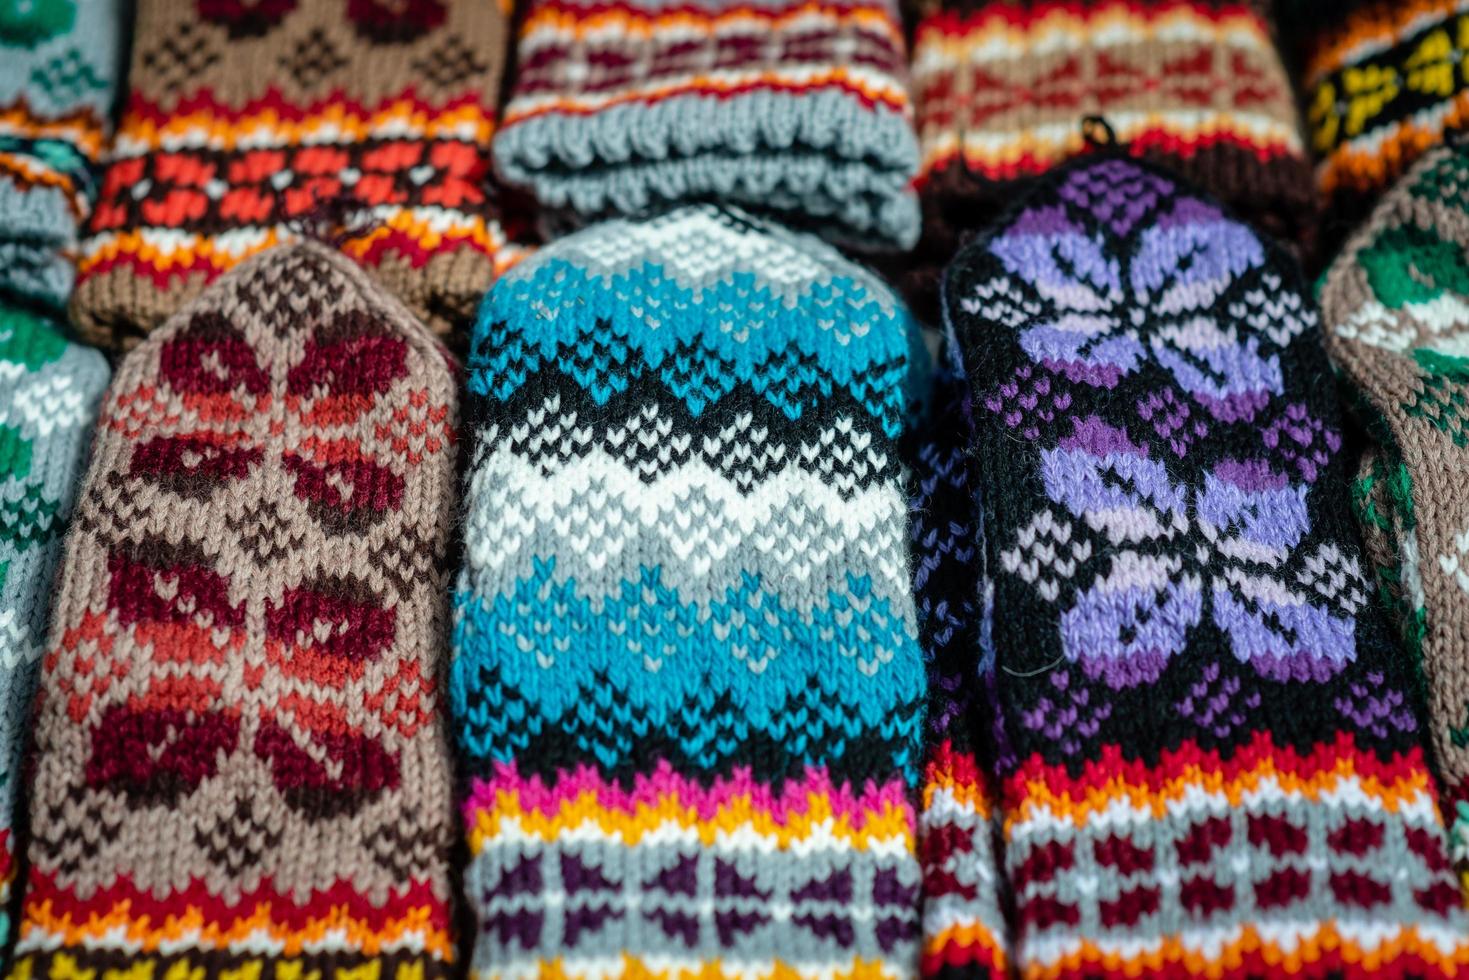 mitaines et chaussettes en laine tricotées traditionnelles lettones photo